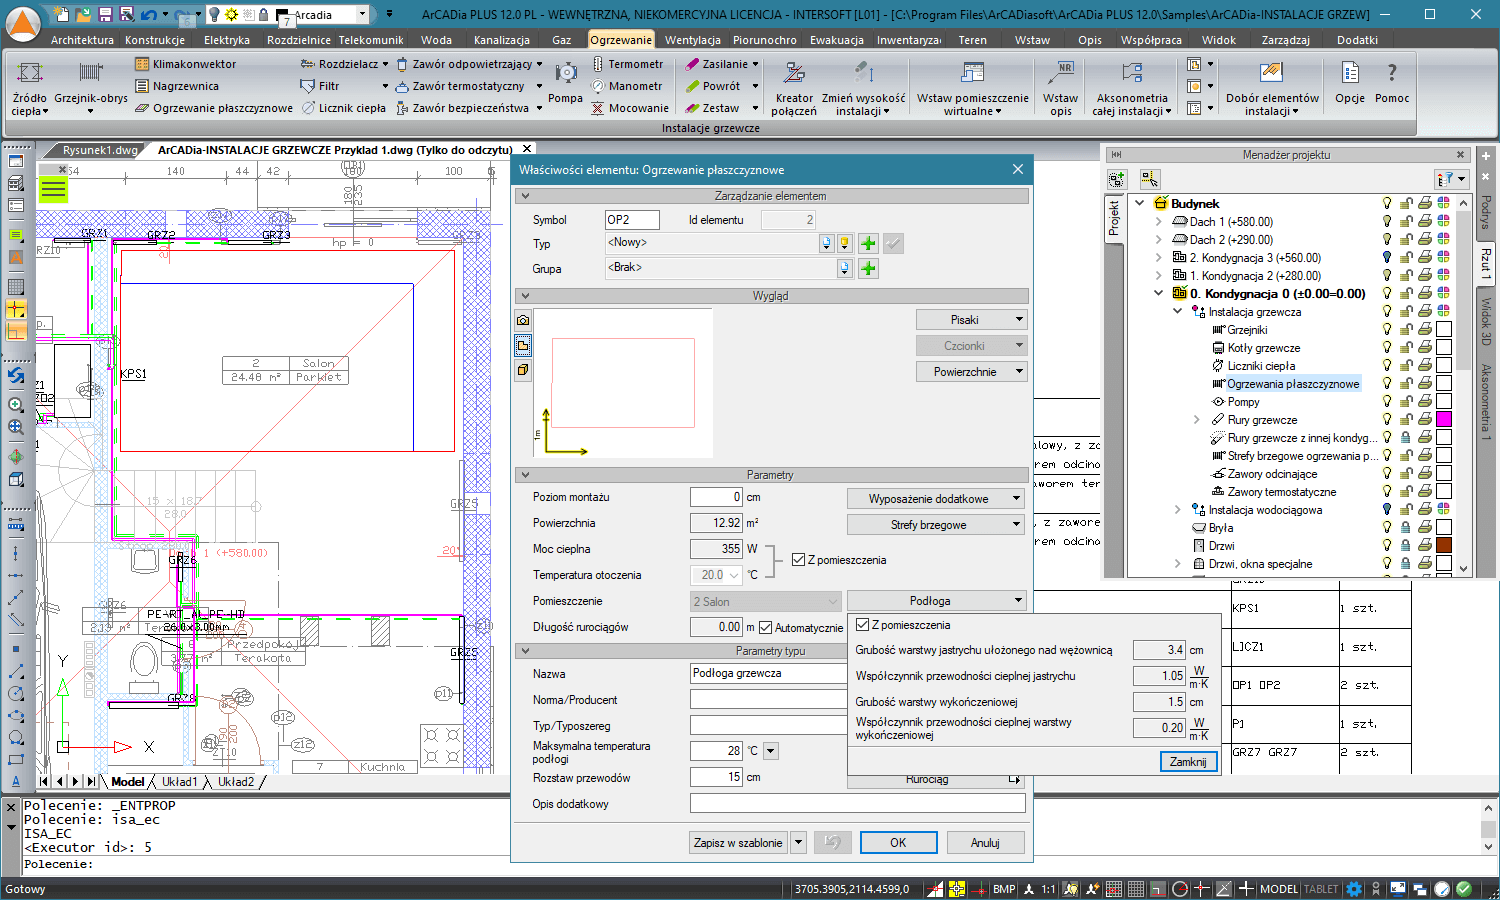 Aktualizacja do ArCADia-INSTALACJE GRZEWCZE 2 | INTERsoft program CAD